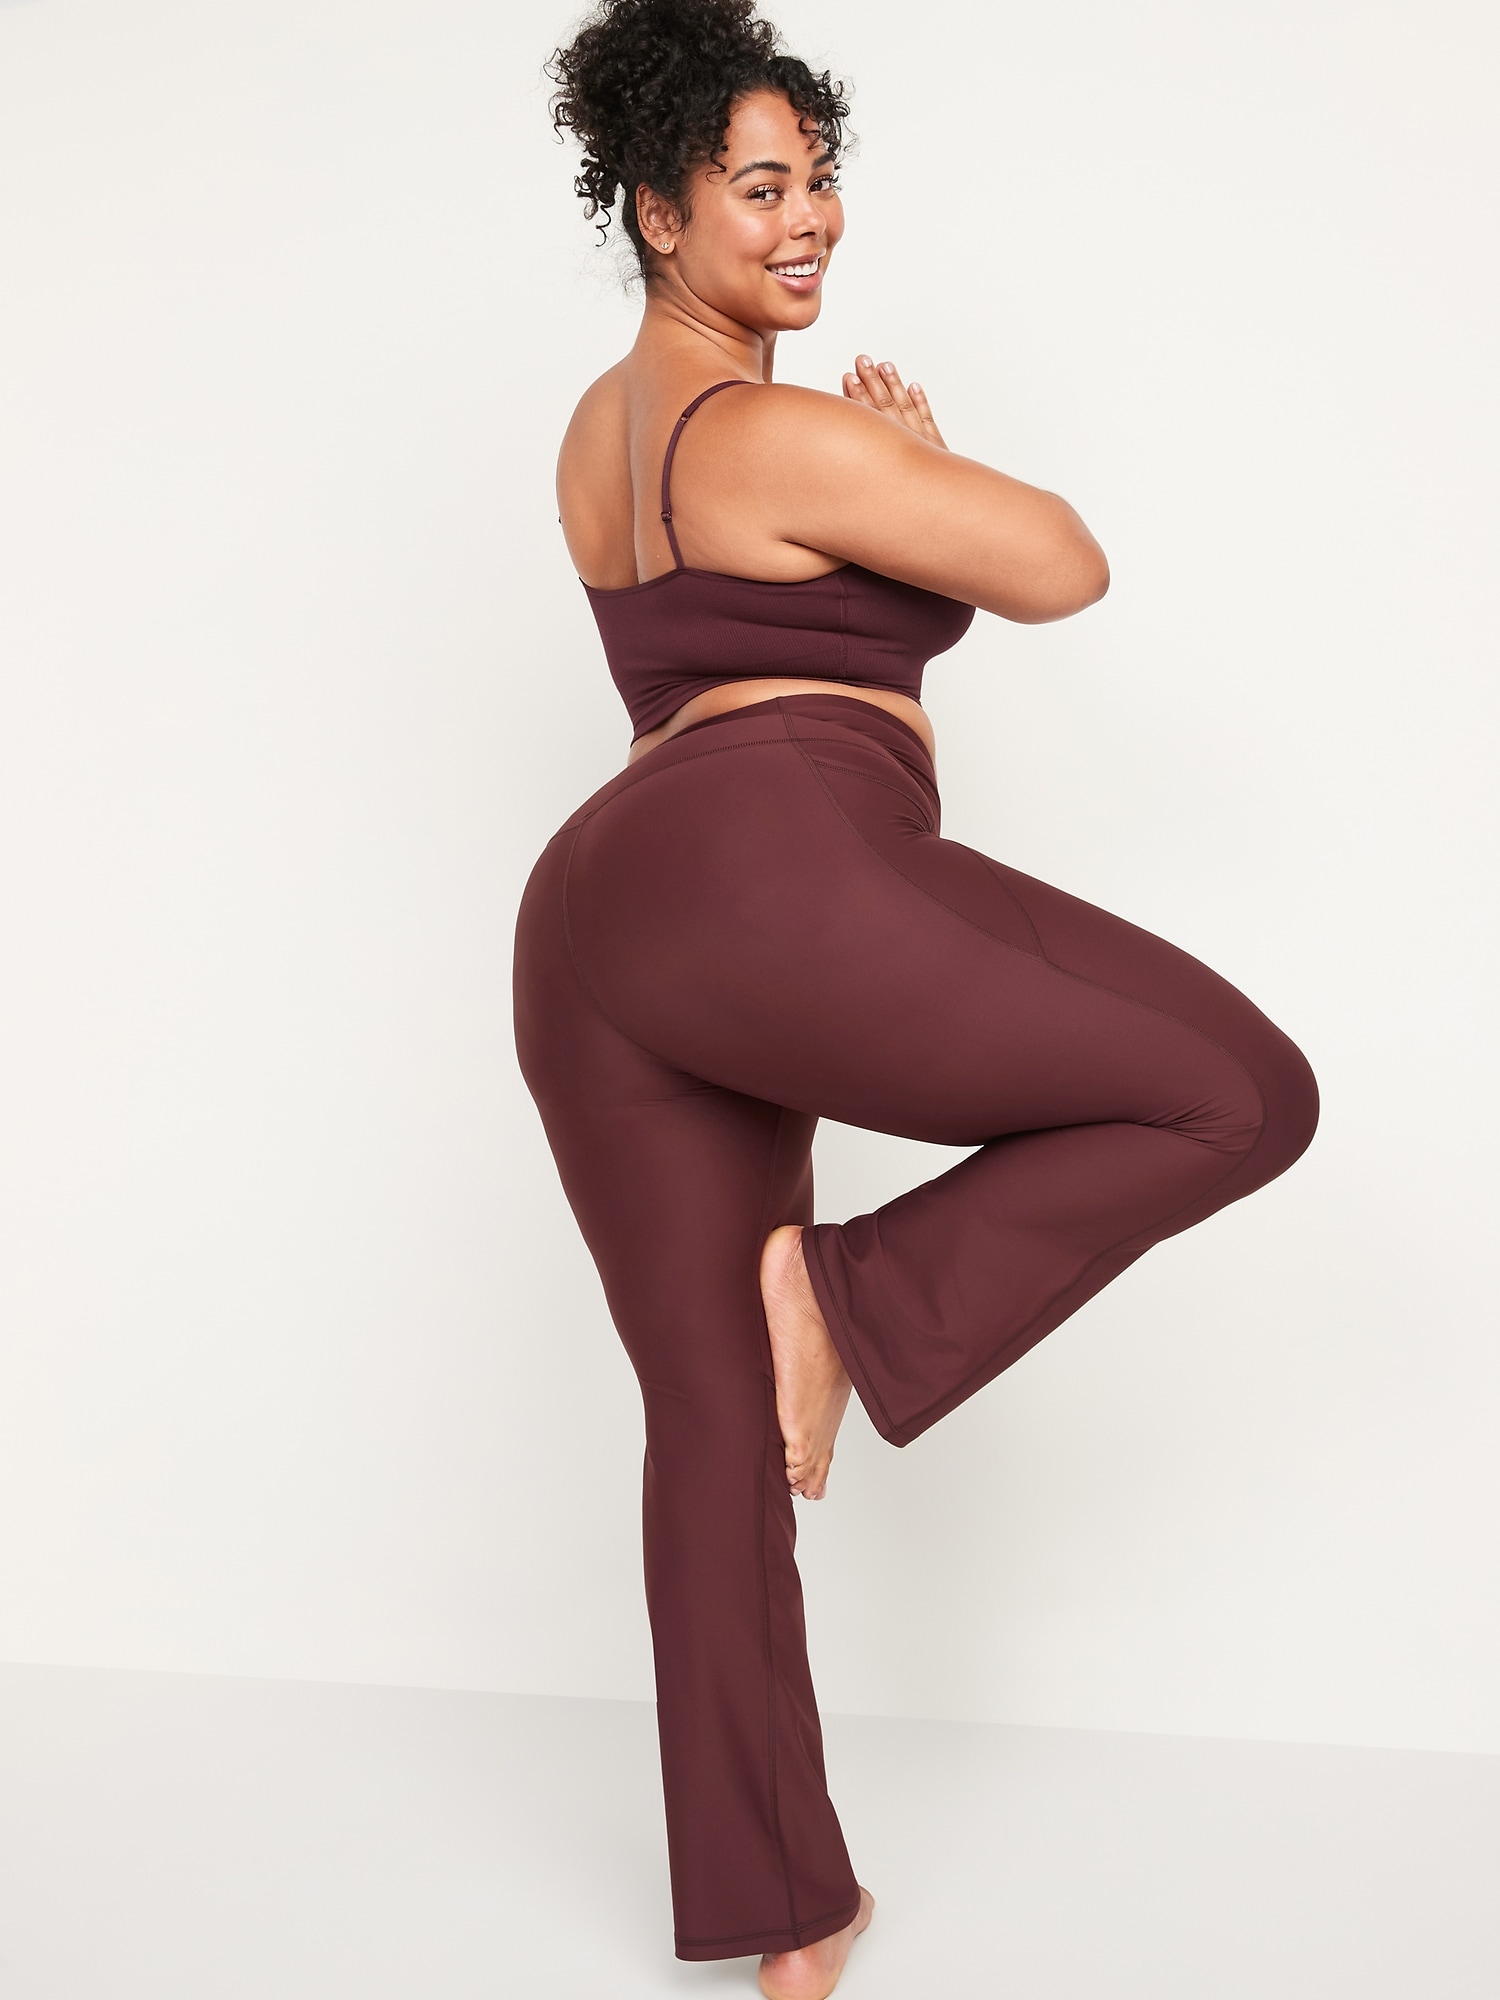 Pantalones Acampanados para Mujer Womens Yoga Pants High Waisted